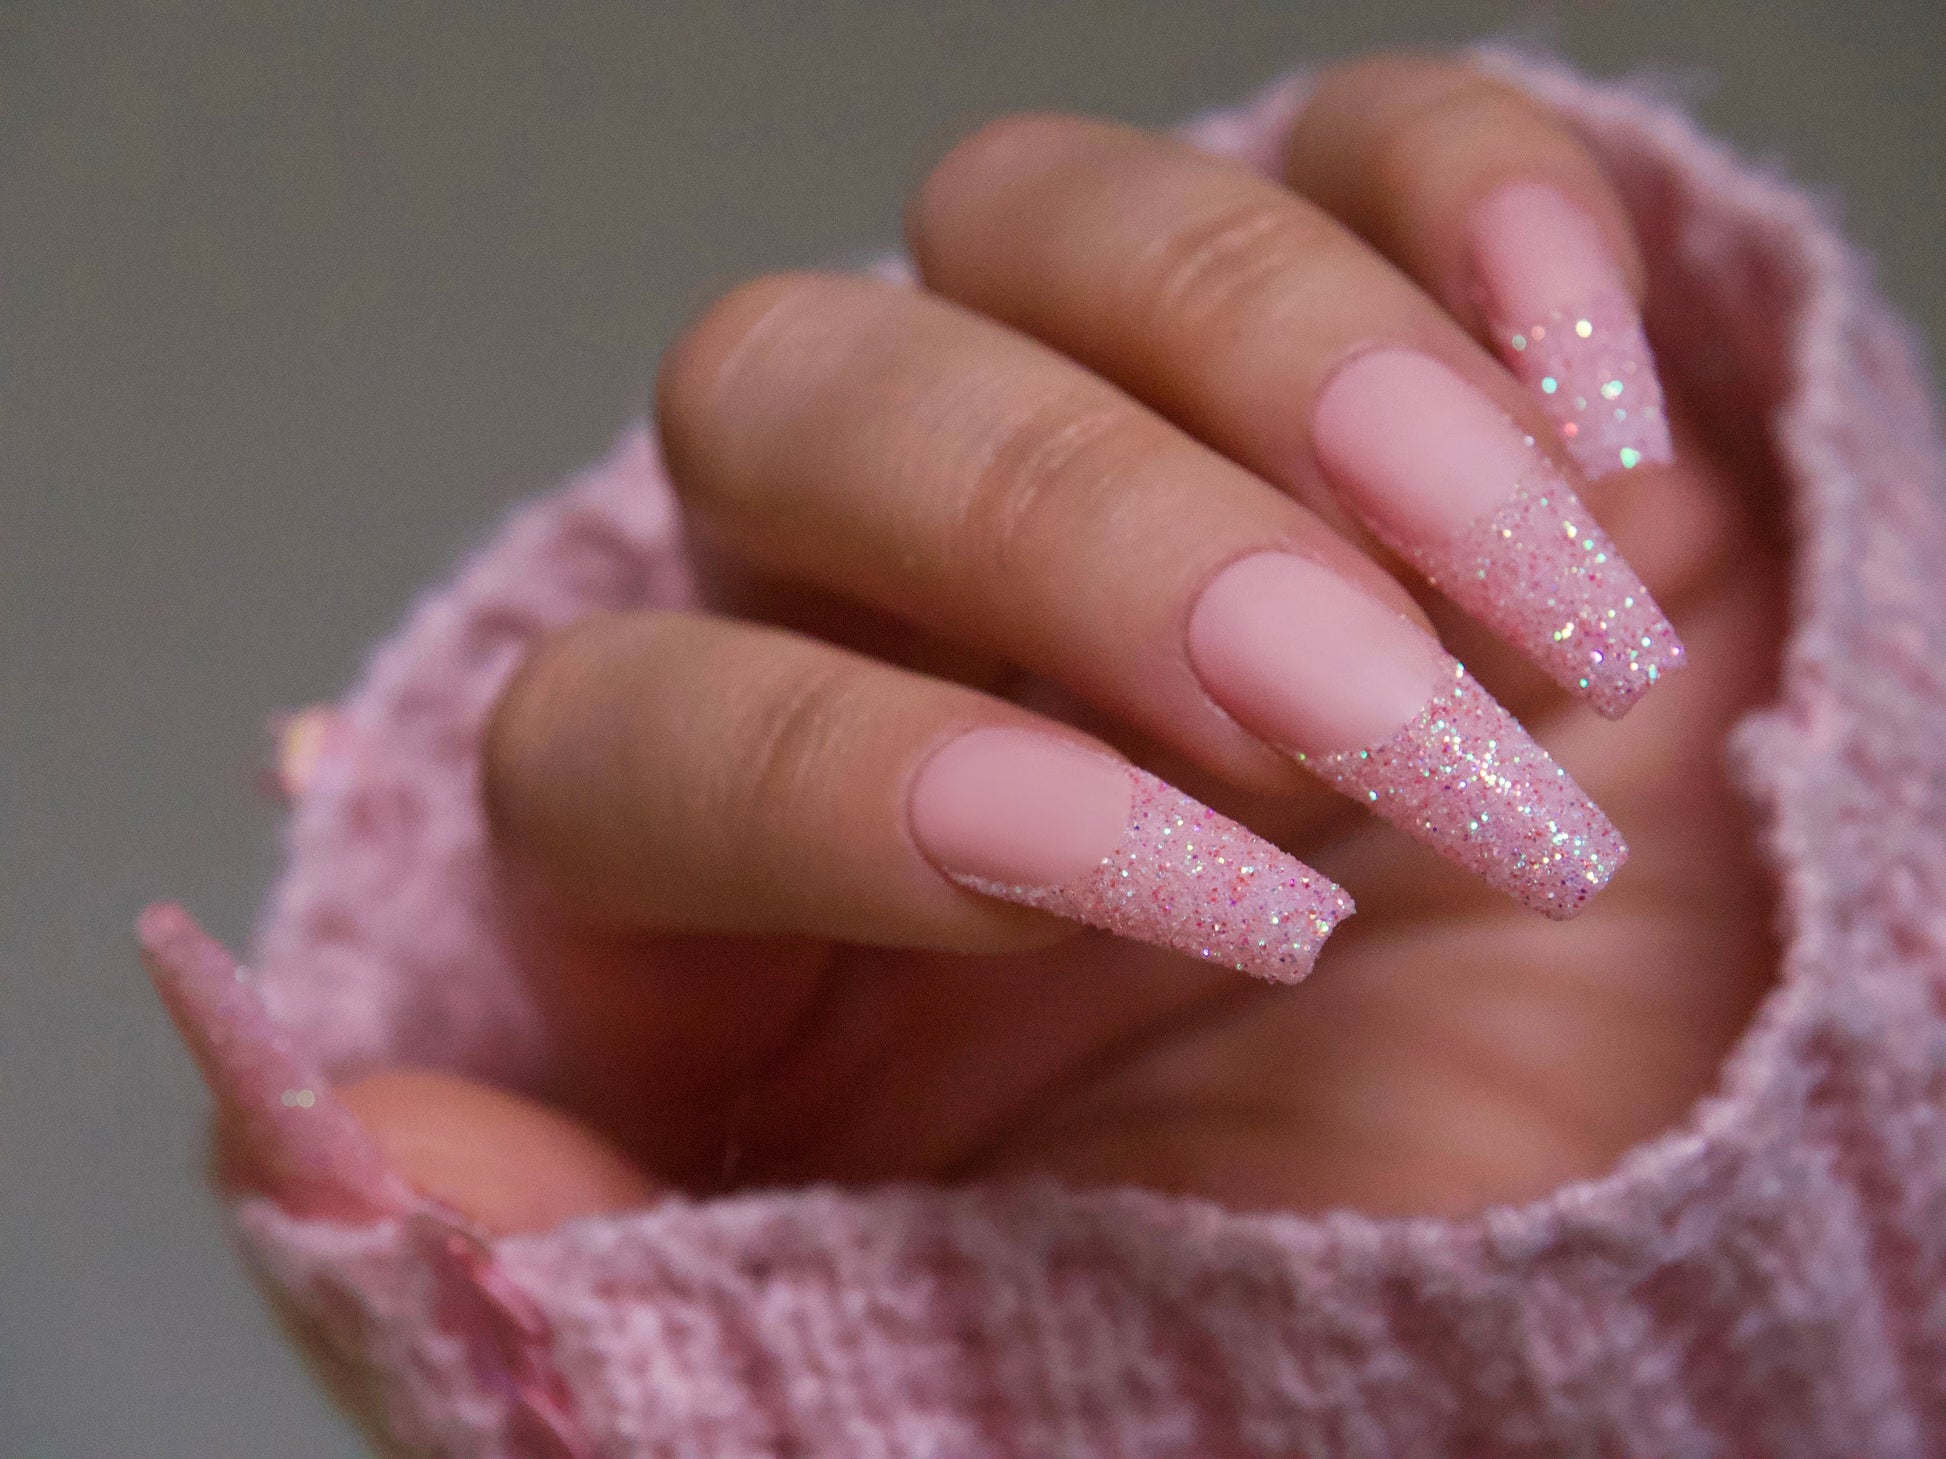 15ml Misty Rose Gel polish/ Flamingo Pink Solid color Nails/ Pastel Salmon Light nude Pink Soak off UV/Led Gel polish Manicure -Makybling